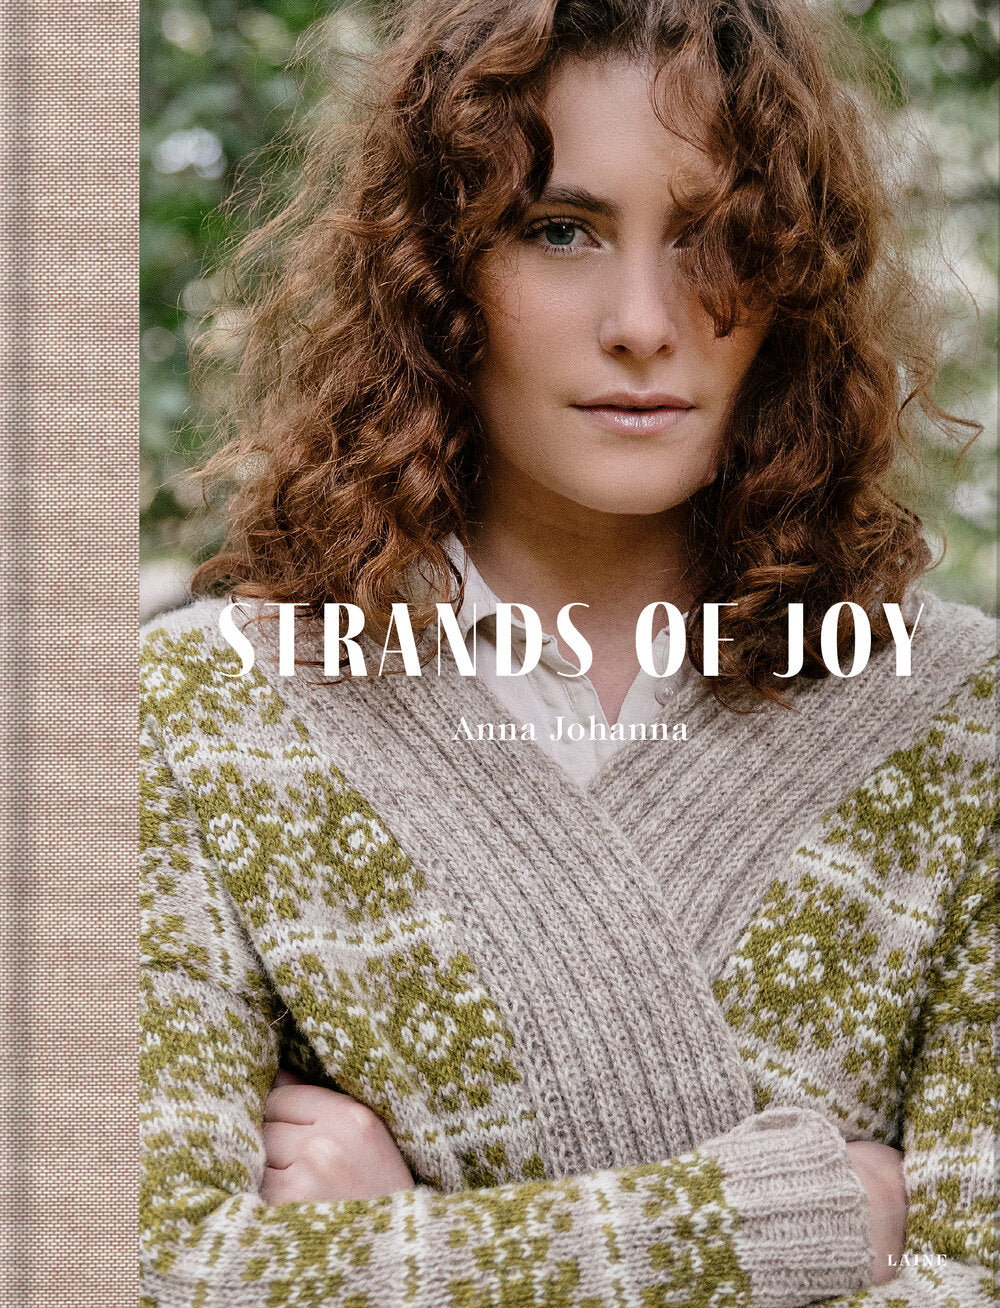 Lainee Strands of joy